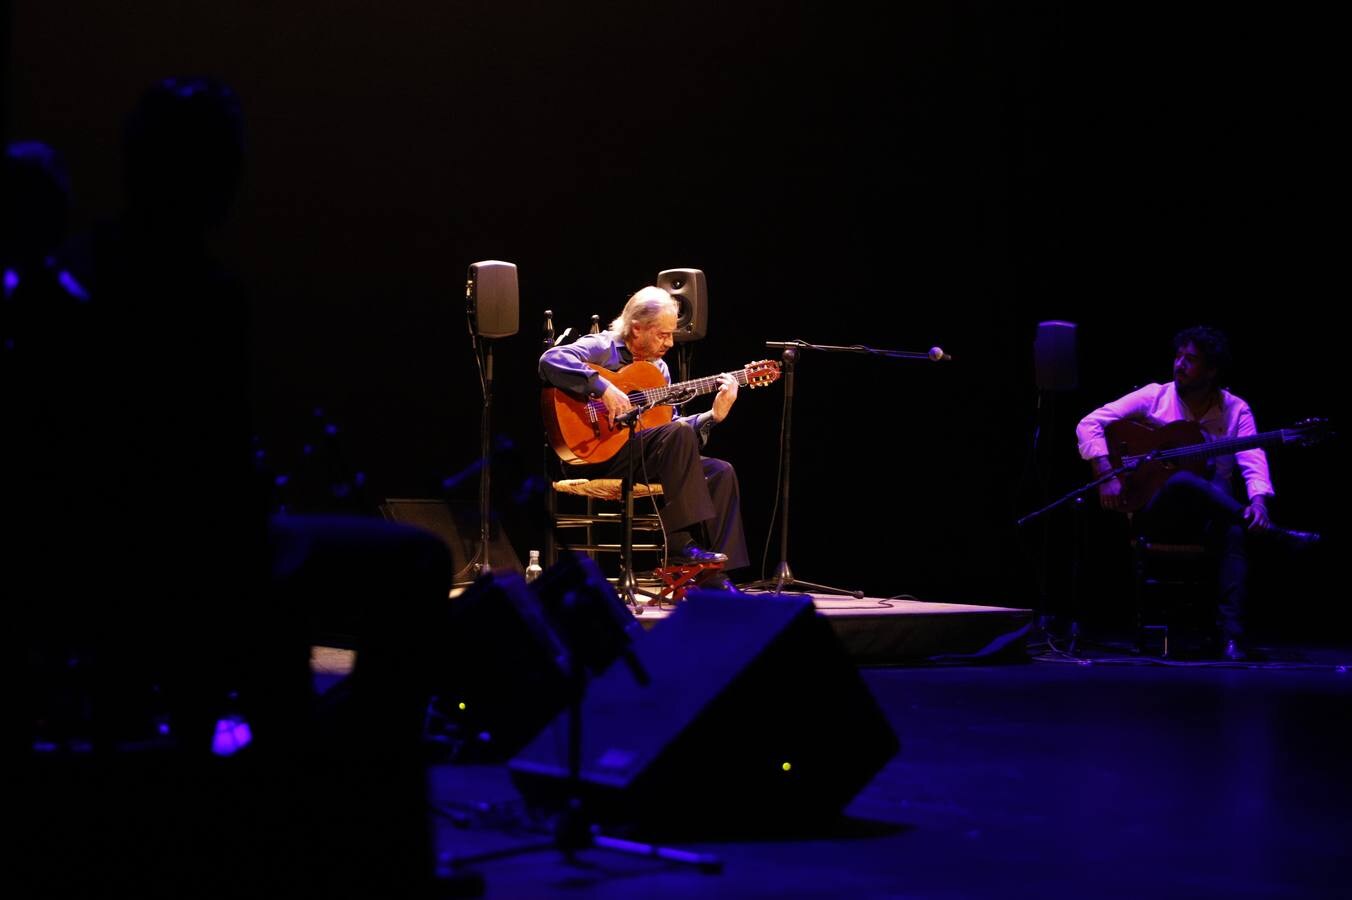 Festival de la Guitarra 2021 | El adiós del maestro Serranito, en imágenes